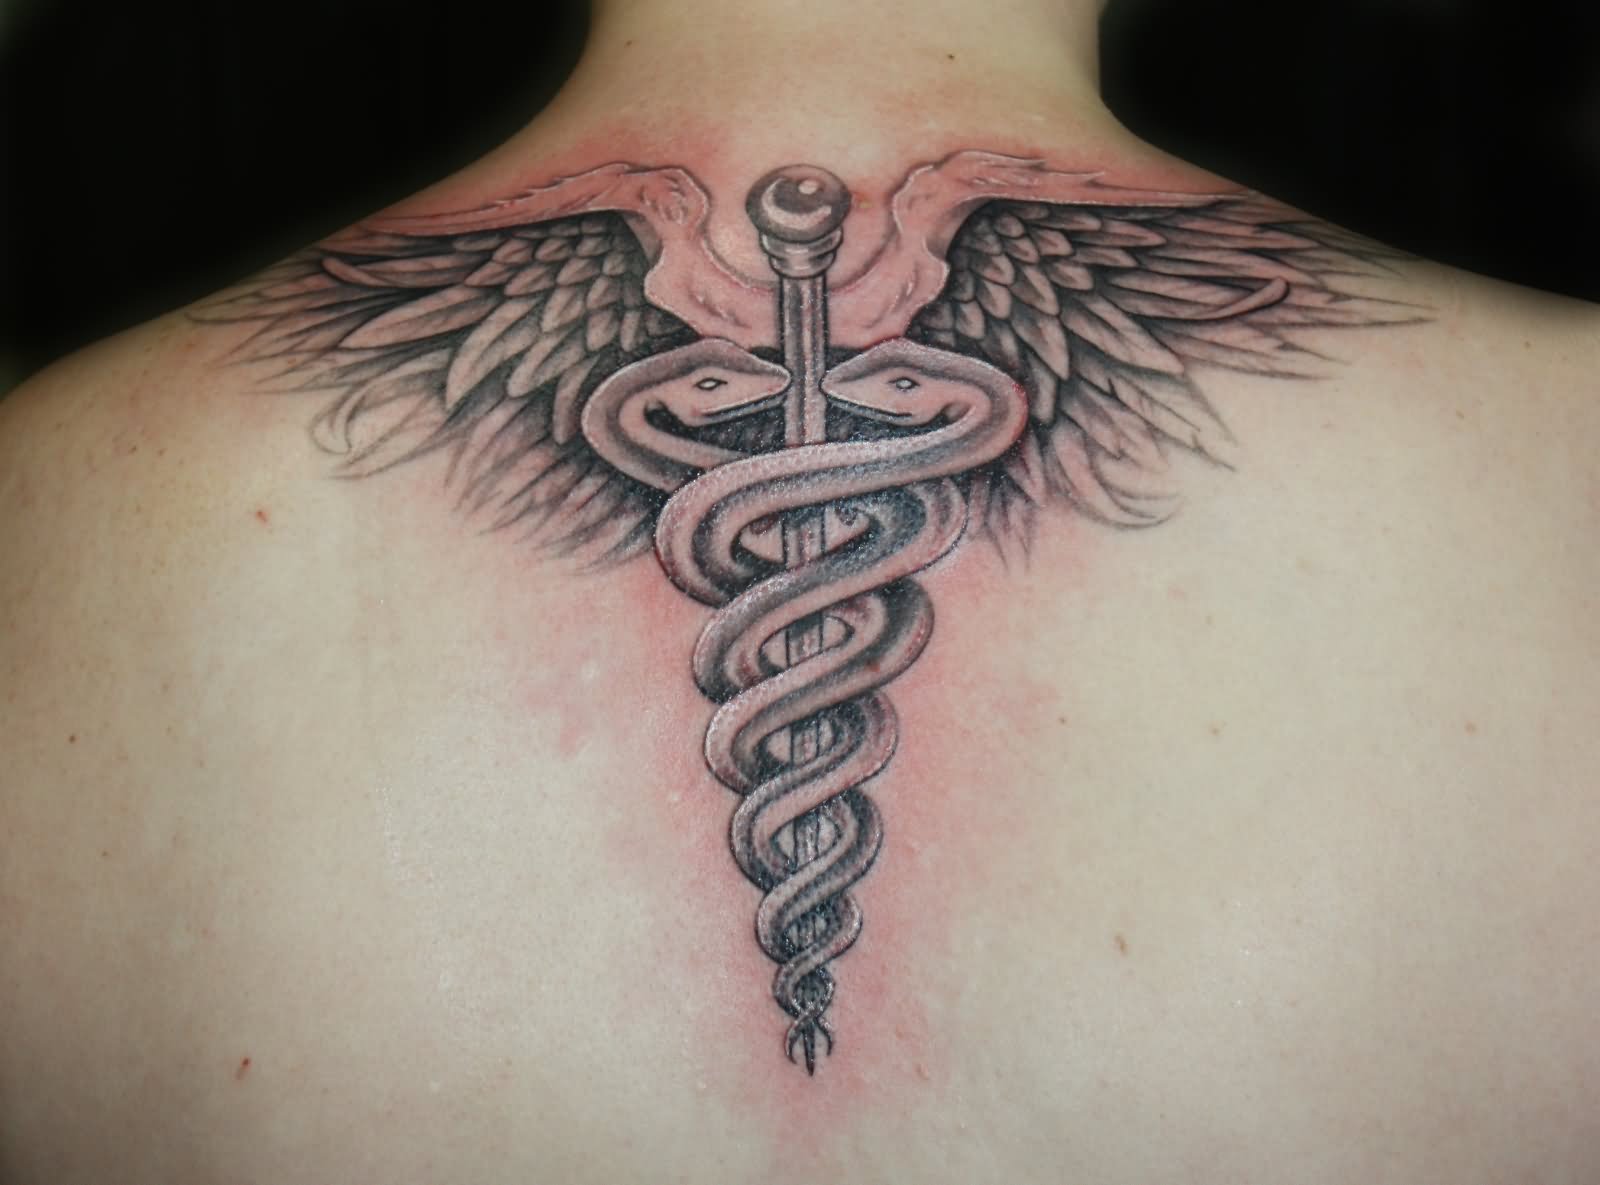 Black Ink Medical Symbol Tattoo Design For Upper Back